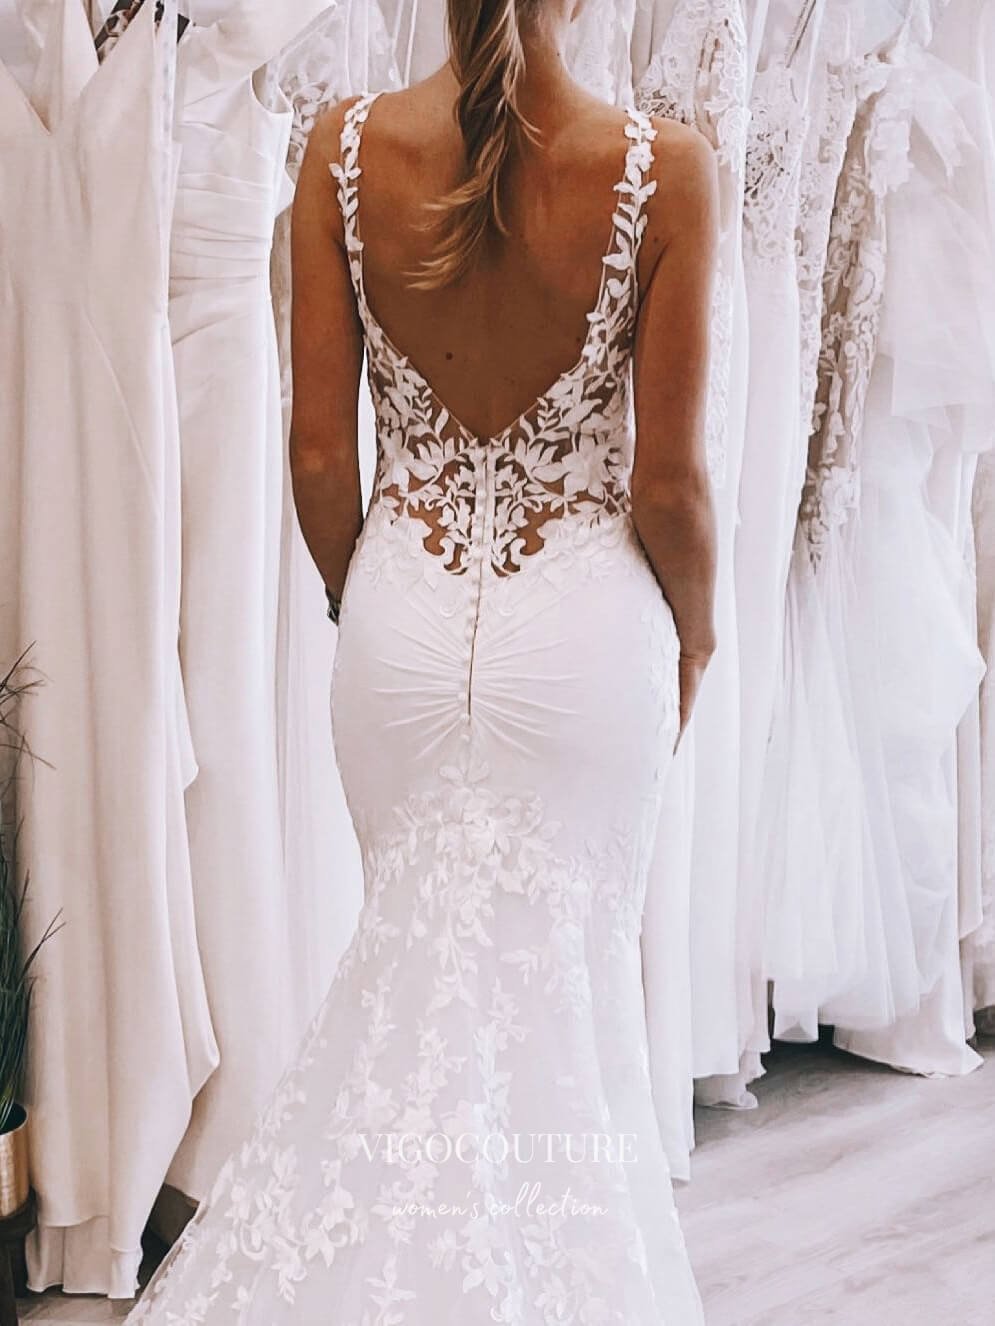 vigocouture-Lace Applique Mermaid Wedding Dresses V-Neck Bridal Dresses W0080-Wedding Dresses-vigocouture-